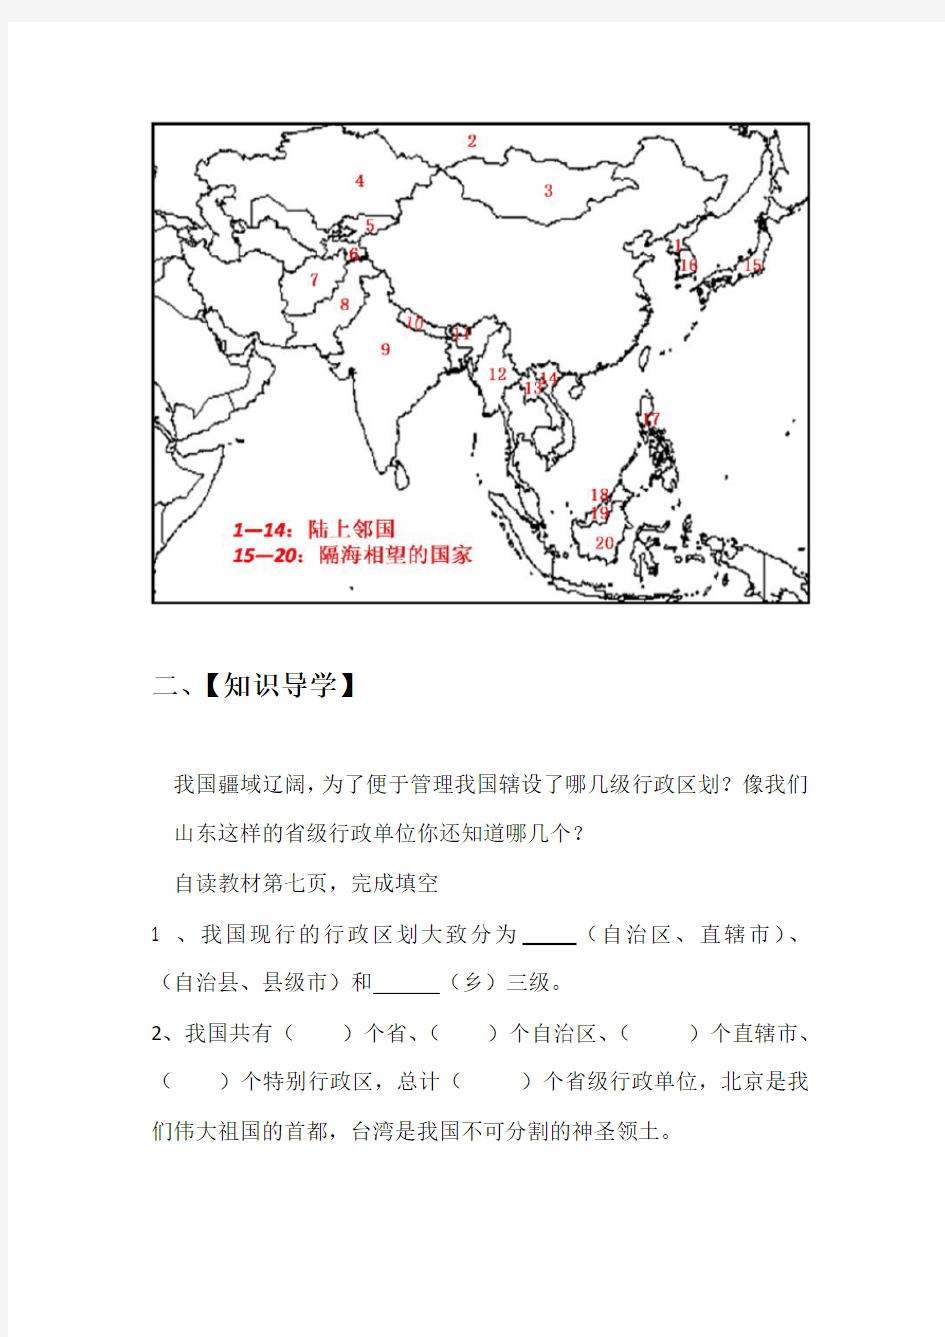 初中地理_湘教版第一章第二节《中国的行政区划》教学设计学情分析教材分析课后反思